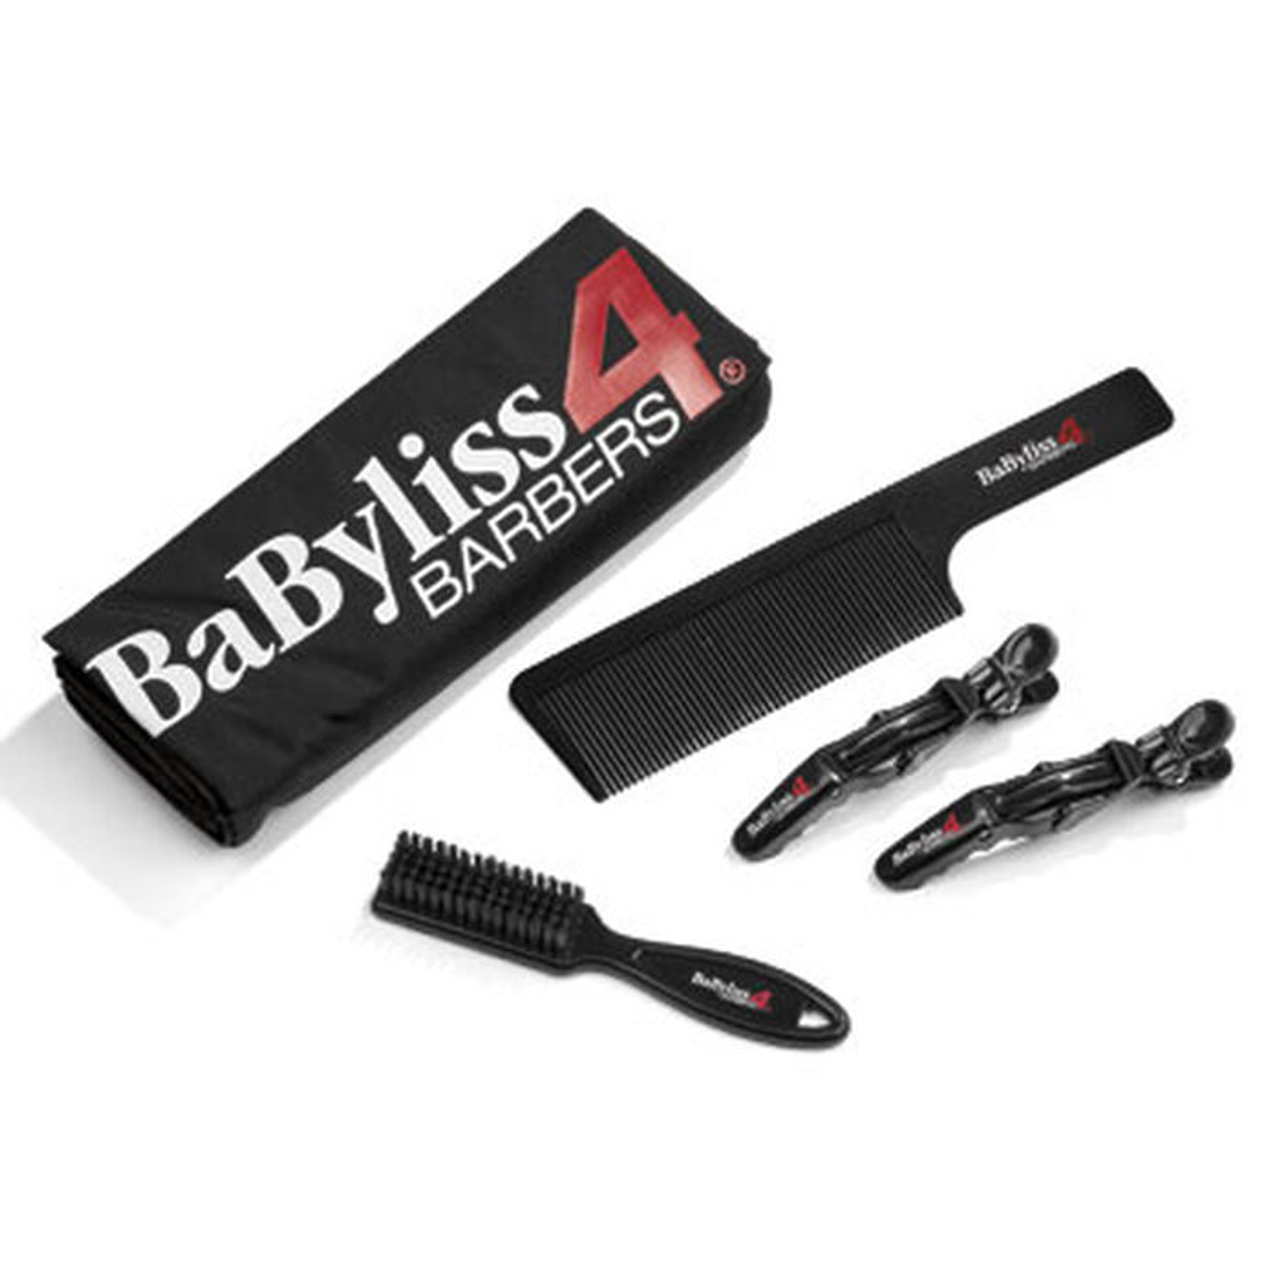 Babyliss Essential Barber Kit